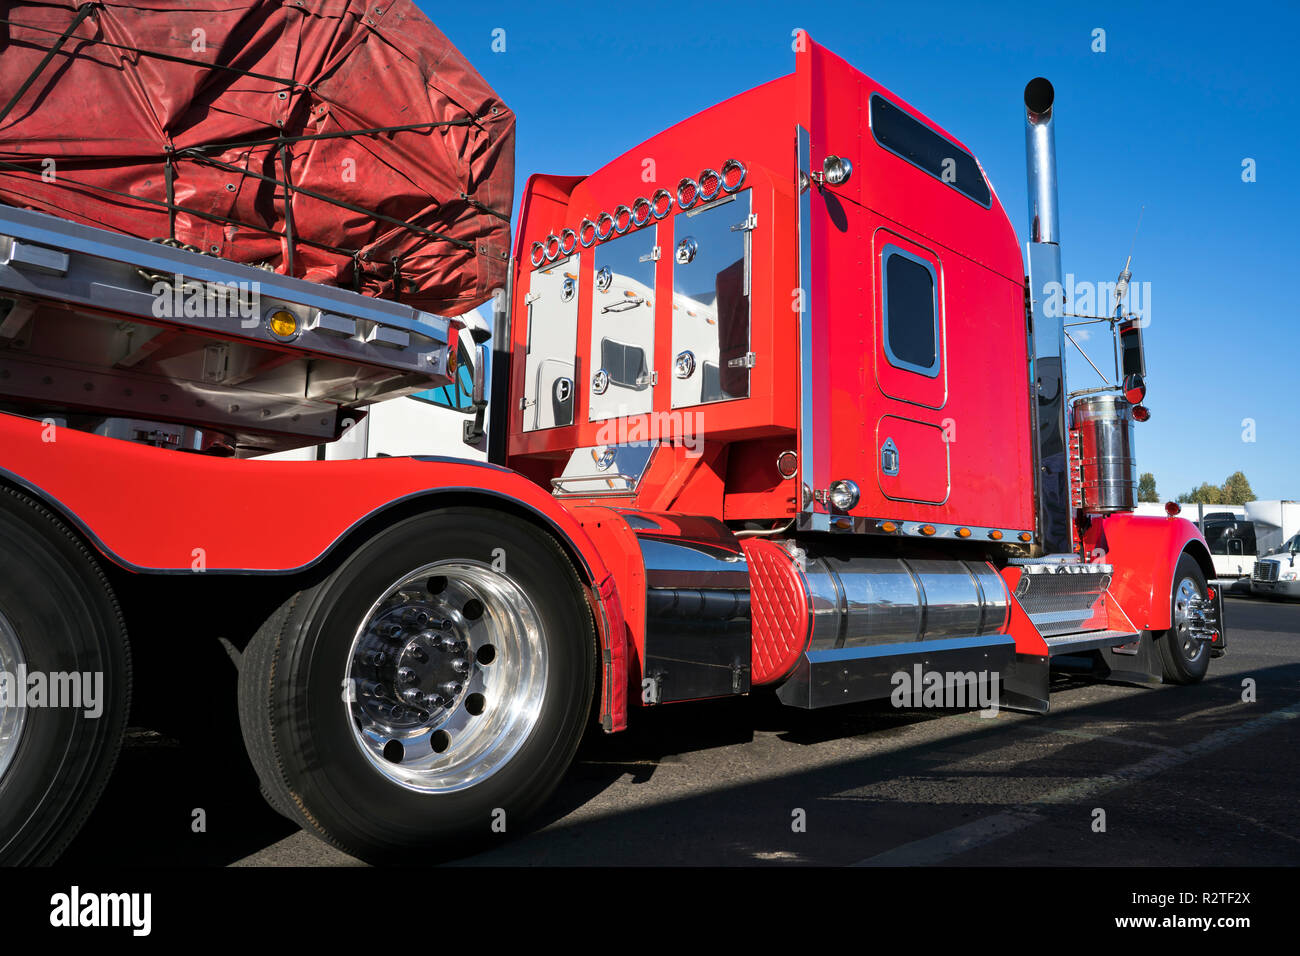 Gros camion rouge vif semi truck américain classique avec parties chromées et semi-remorque à plateau transporter du fret commercial couverts et fixée par les élingues sur socle Banque D'Images